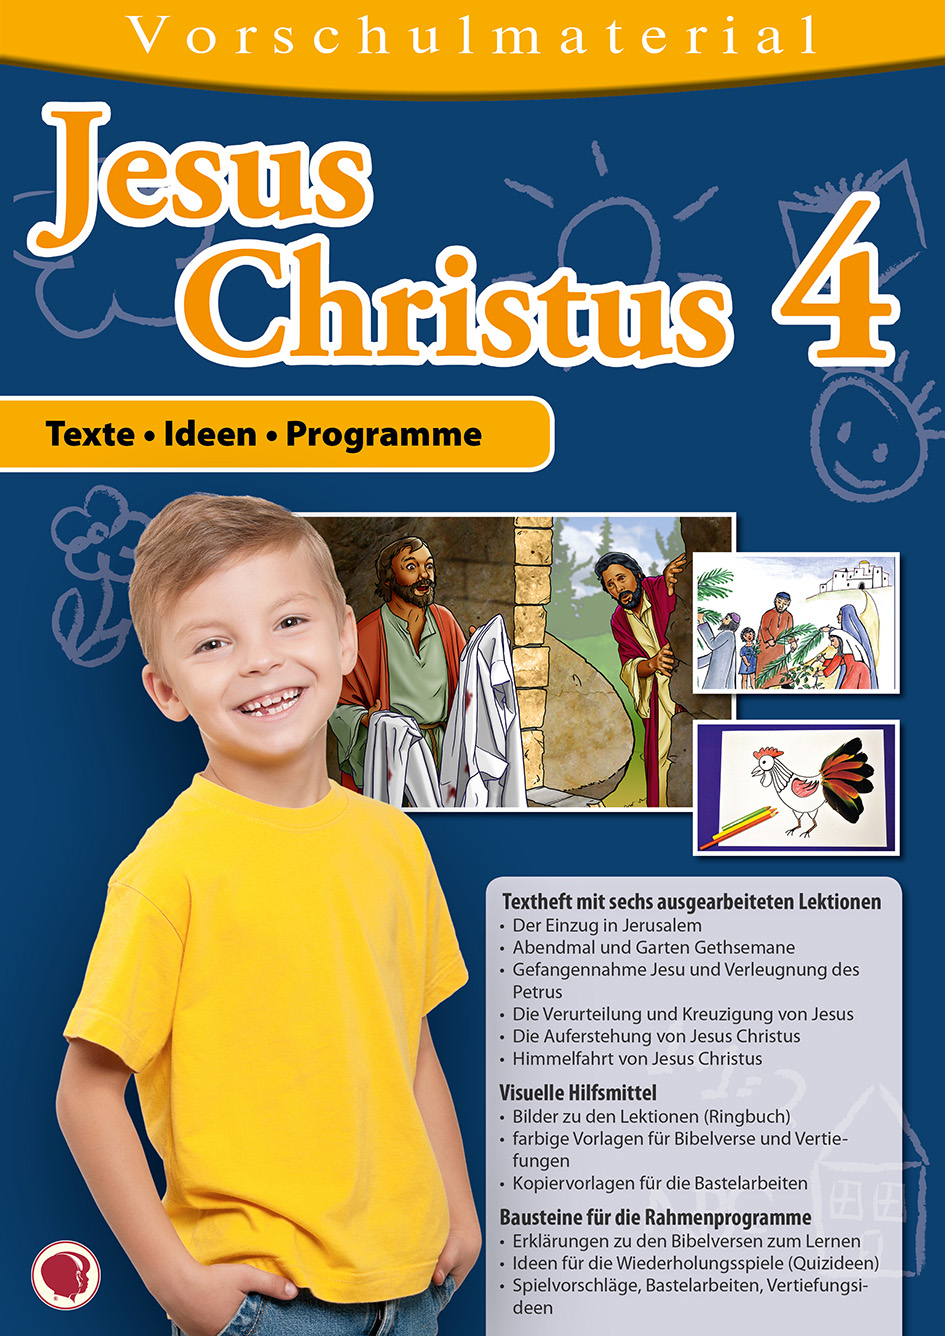 Jesus Christus 4 - Material für Vorschulkinder